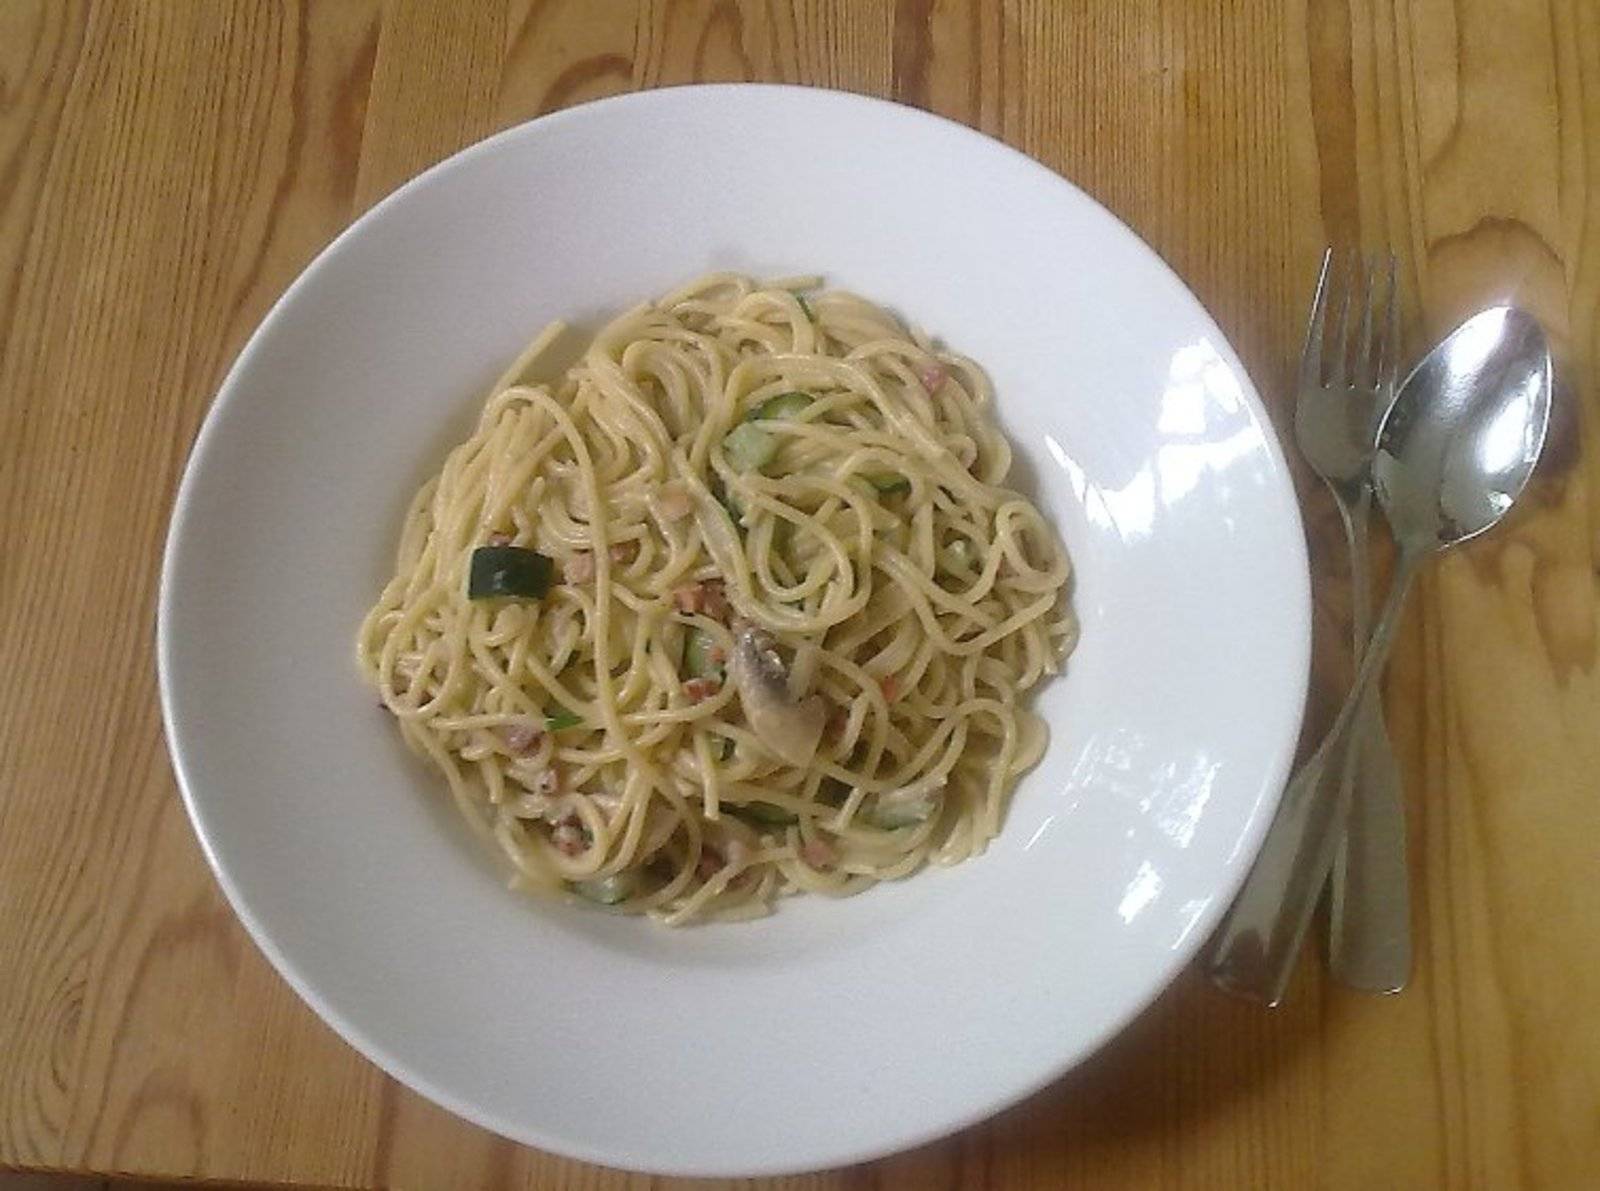 Spaghetti in Zucchini-Champignon-Specksoße